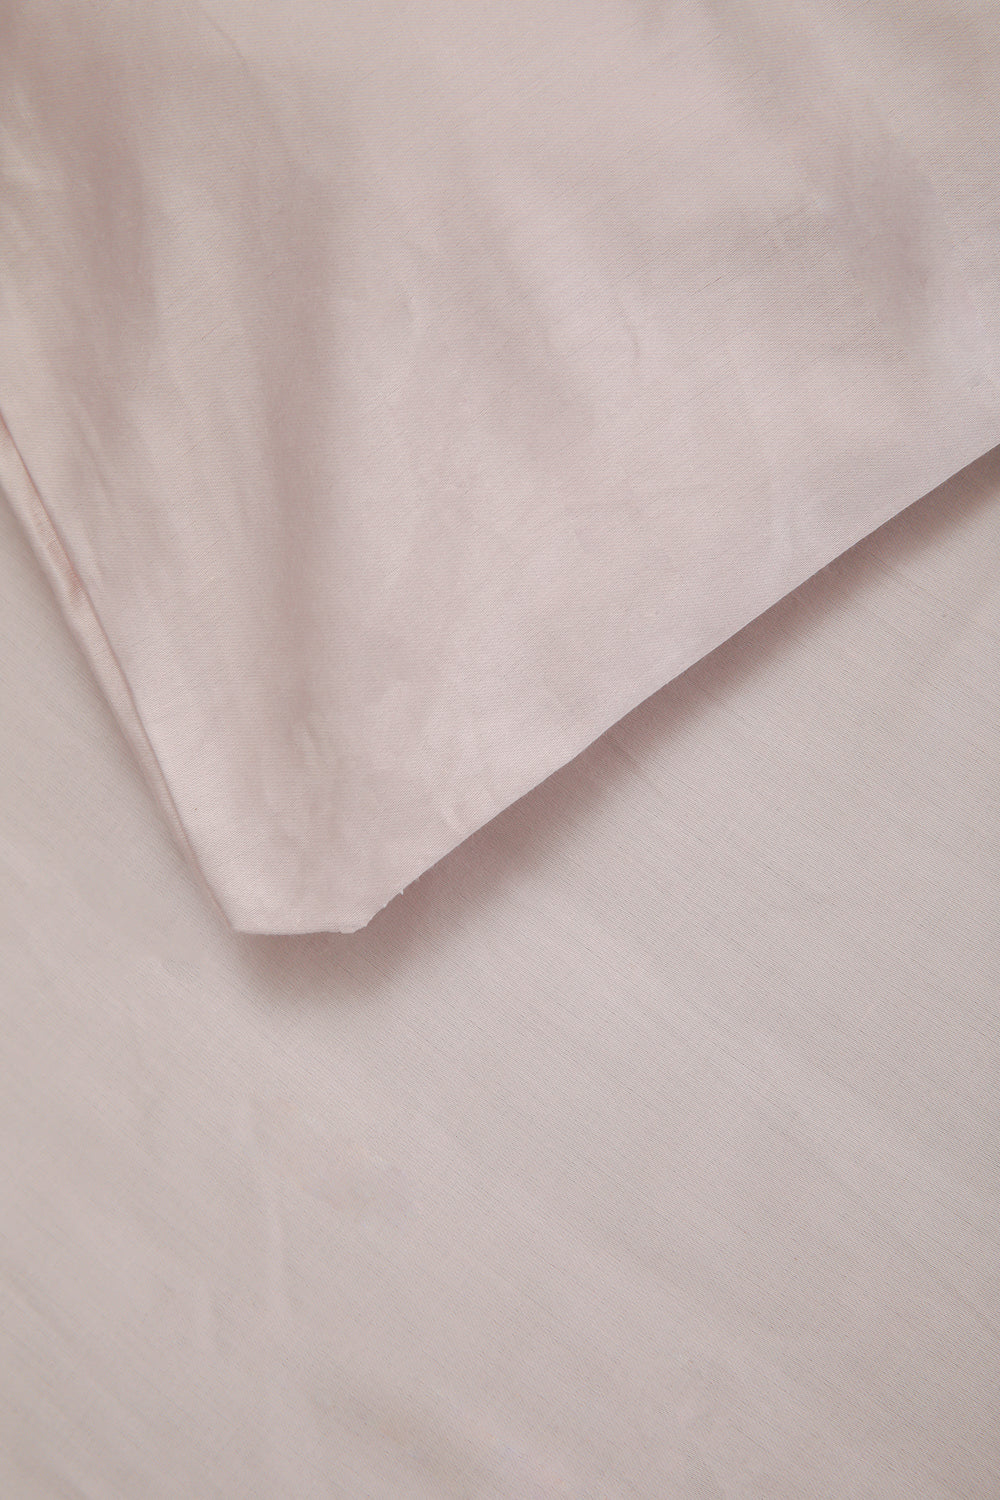 סדין מיטה זוגית 180/200 100% כותנה באריגת סאטן בצבע לילך